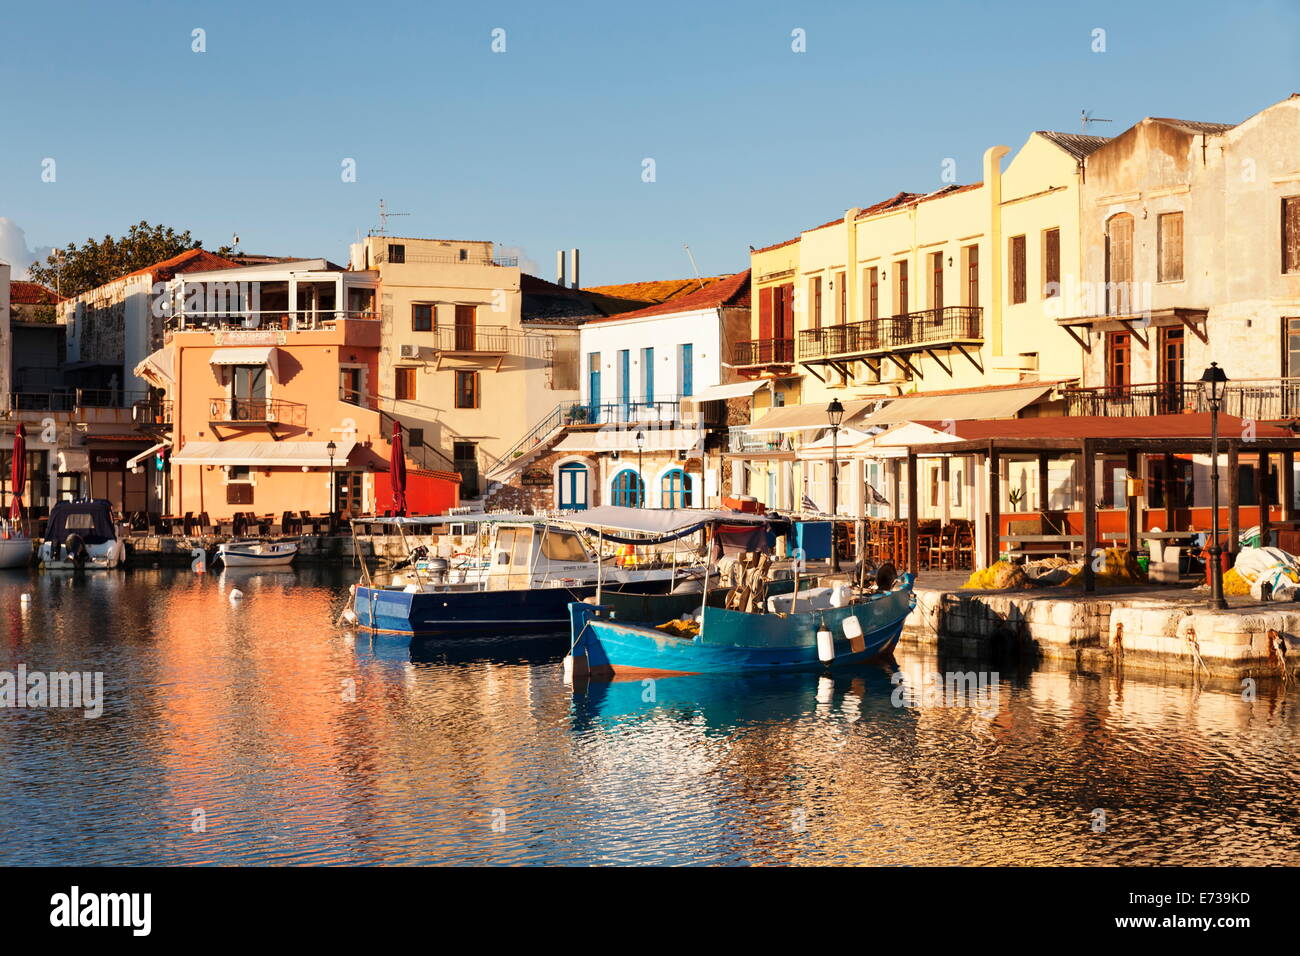 Alten venezianischen Hafen, Tavernen am Meer, Rethymno (Rethymnon), Kreta, griechische Inseln, Griechenland, Europa Stockfoto